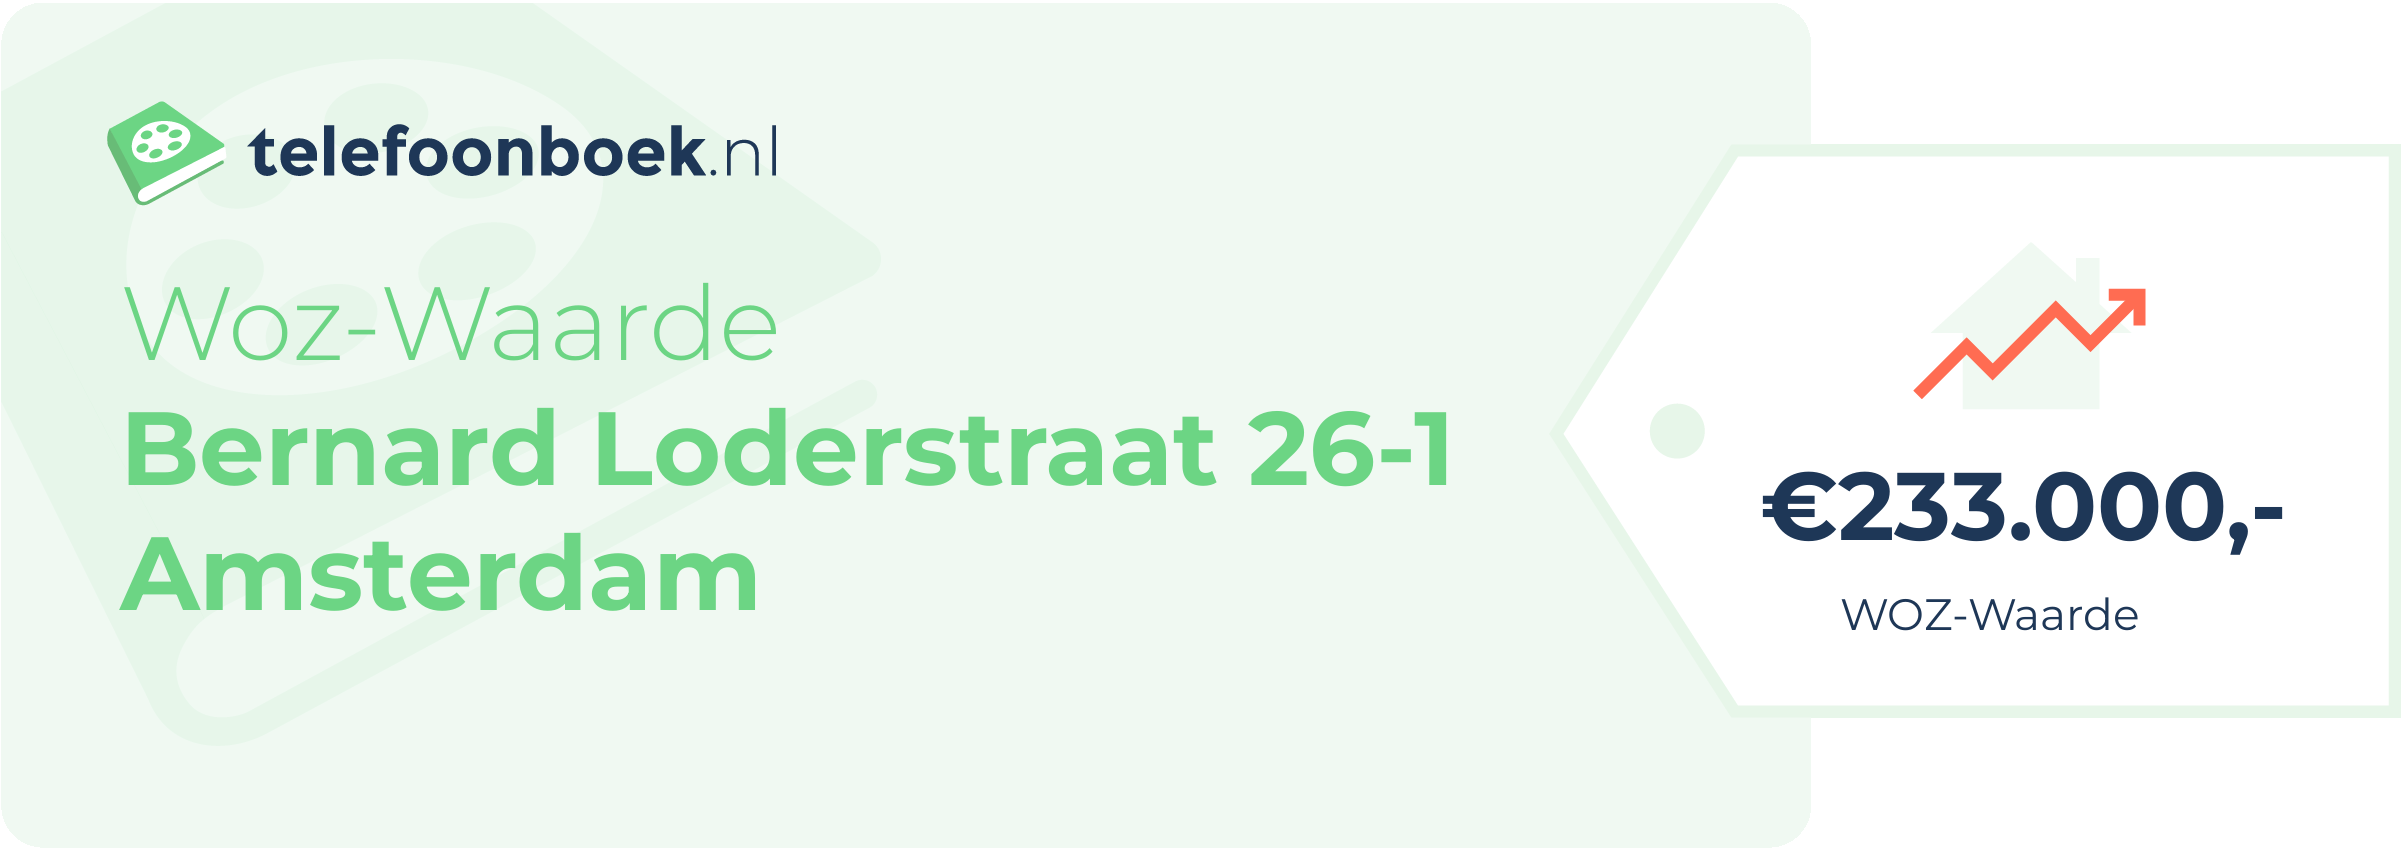 WOZ-waarde Bernard Loderstraat 26-1 Amsterdam